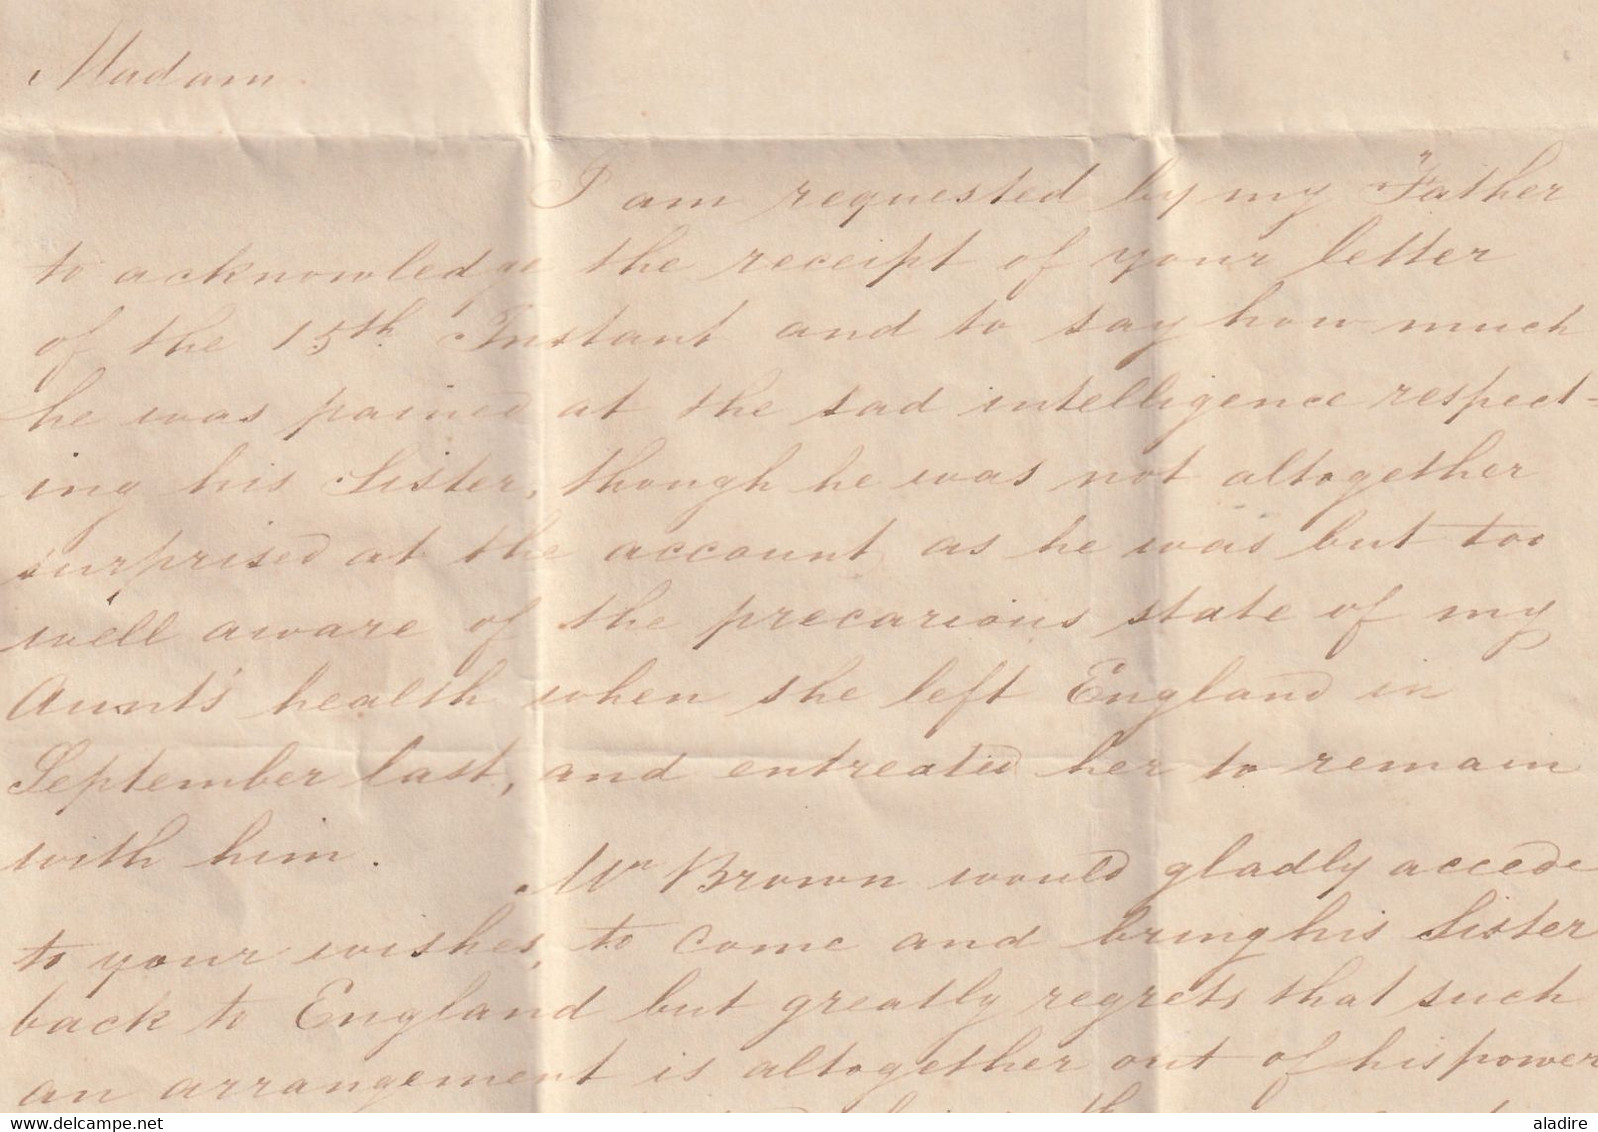 1847 - QV - Lettre pliée avec corresp. de 3 p en français de Kensington vers Rouen, France - Port Payé en Angleterre